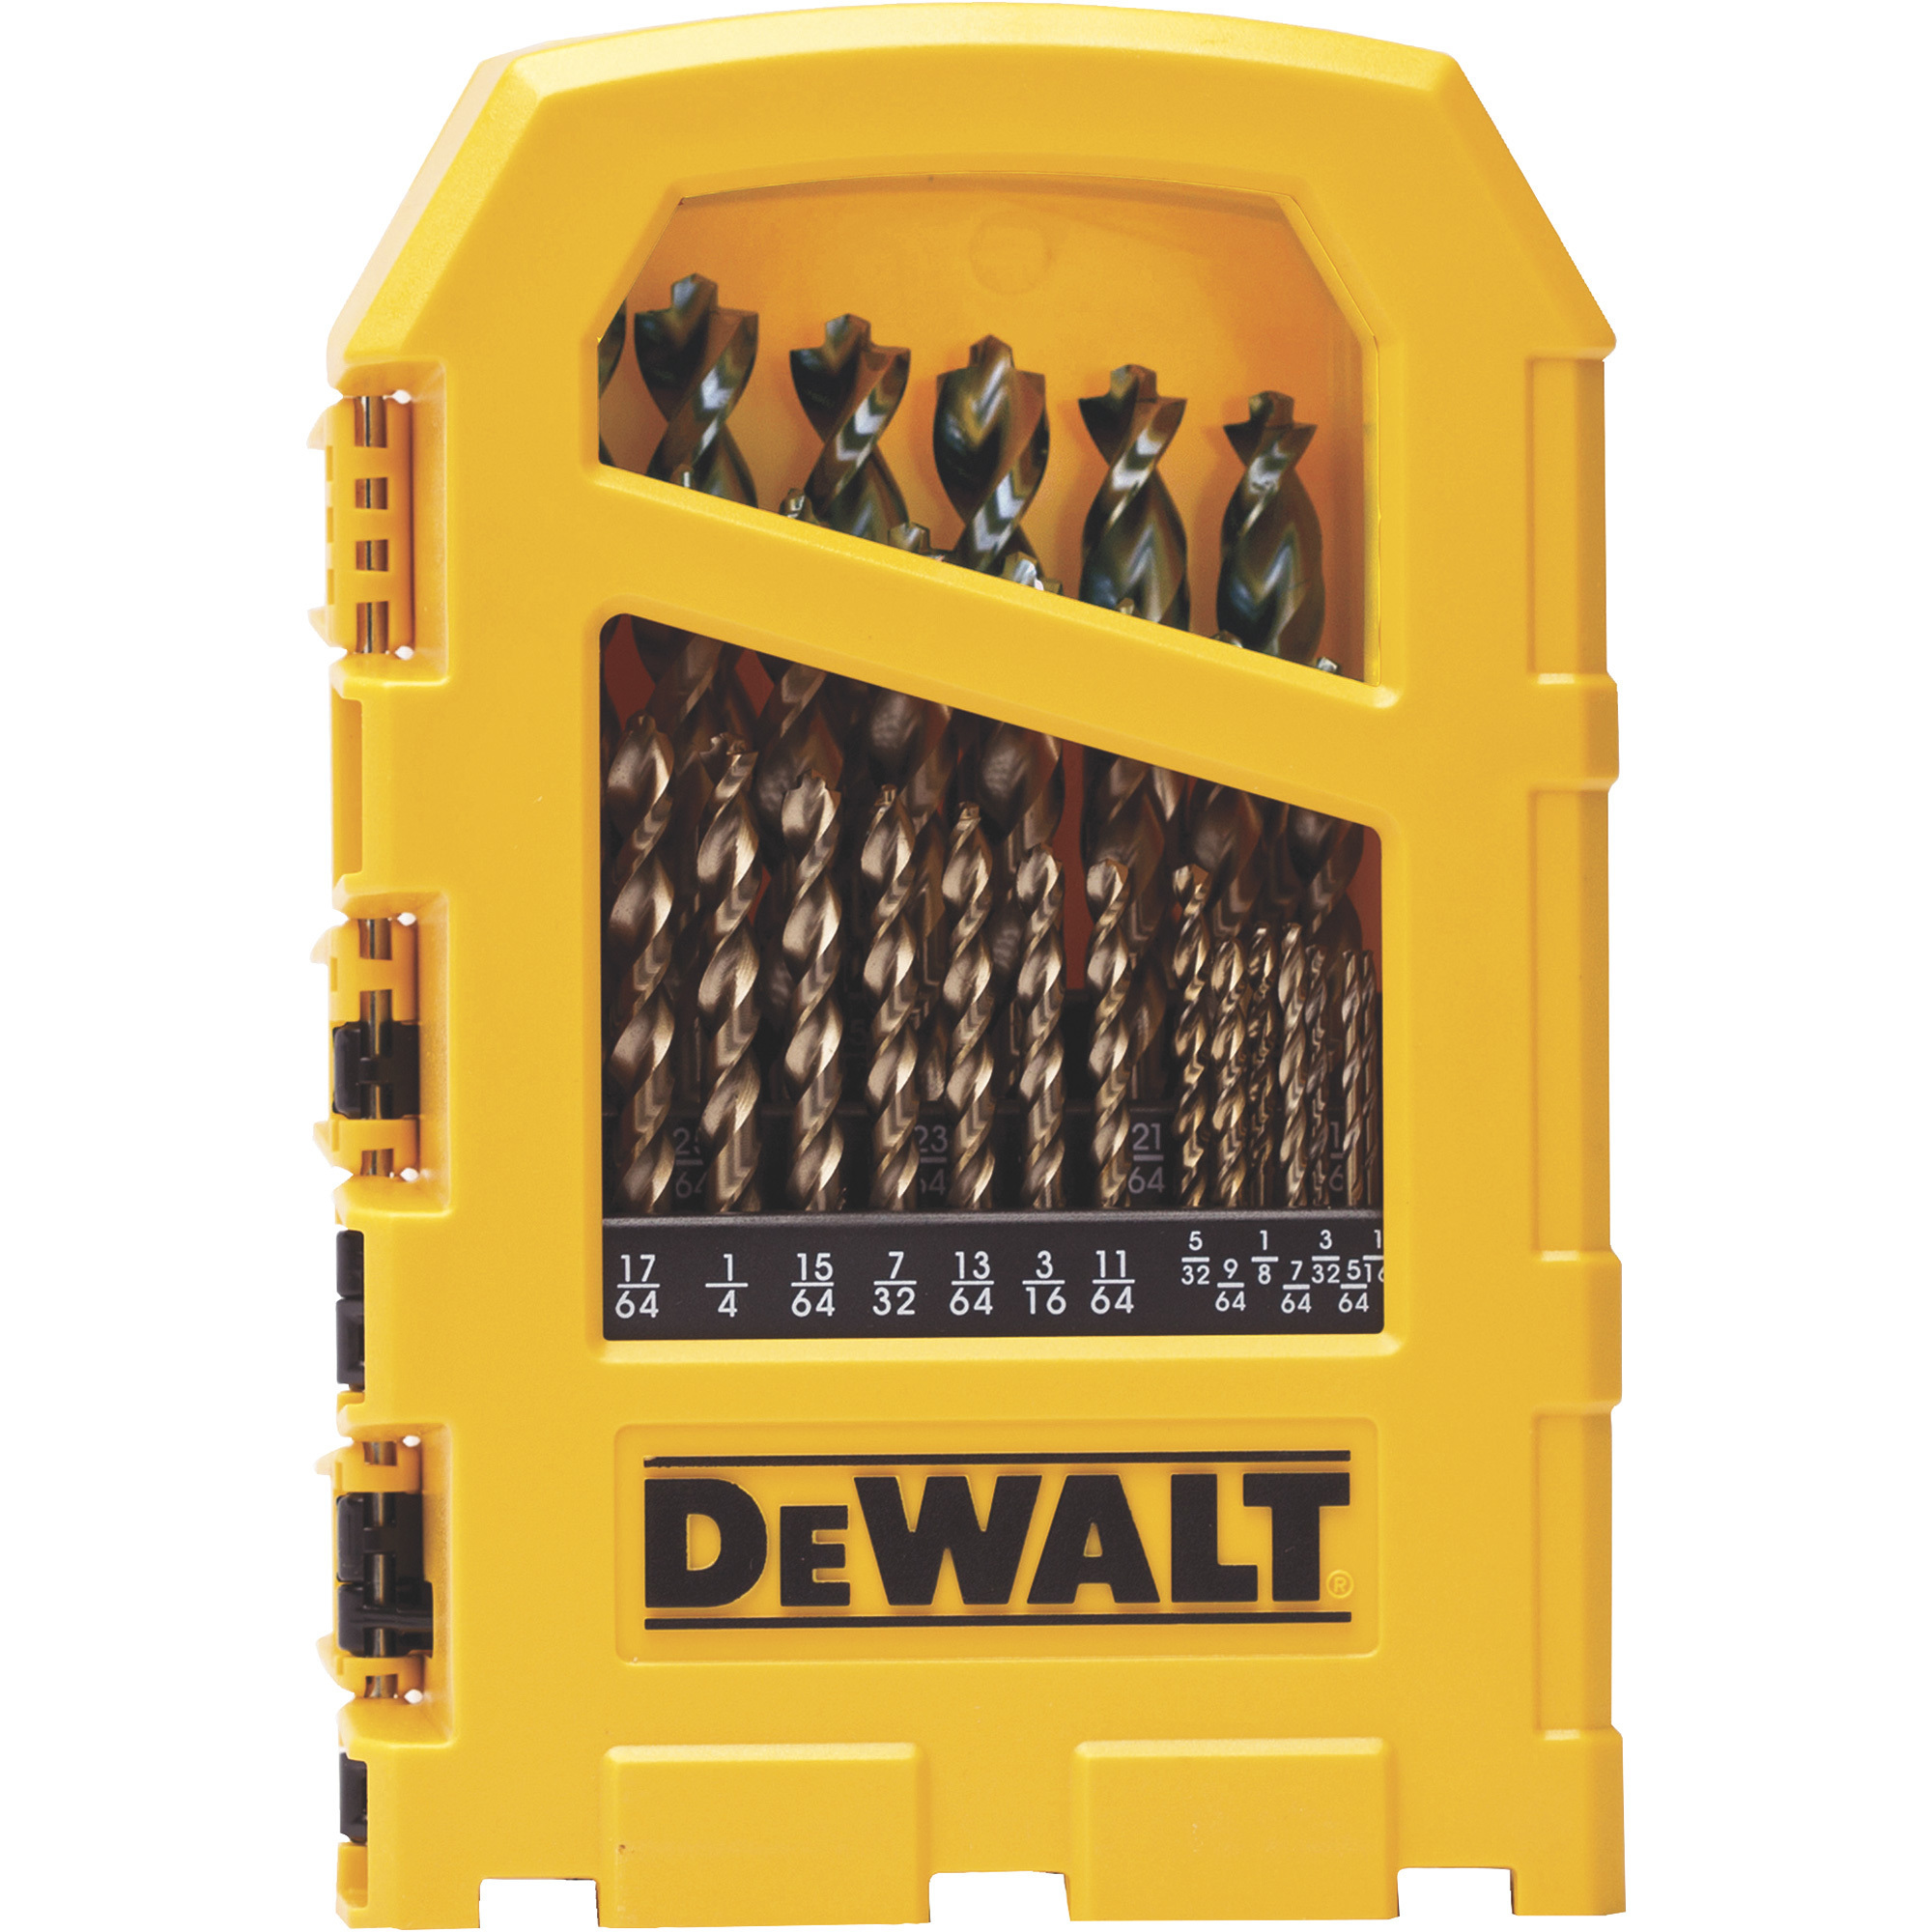 DEWALT Pilot Point Gold Ferrous Oxide Drill Bit Set, 29-Piece, Model DW1969